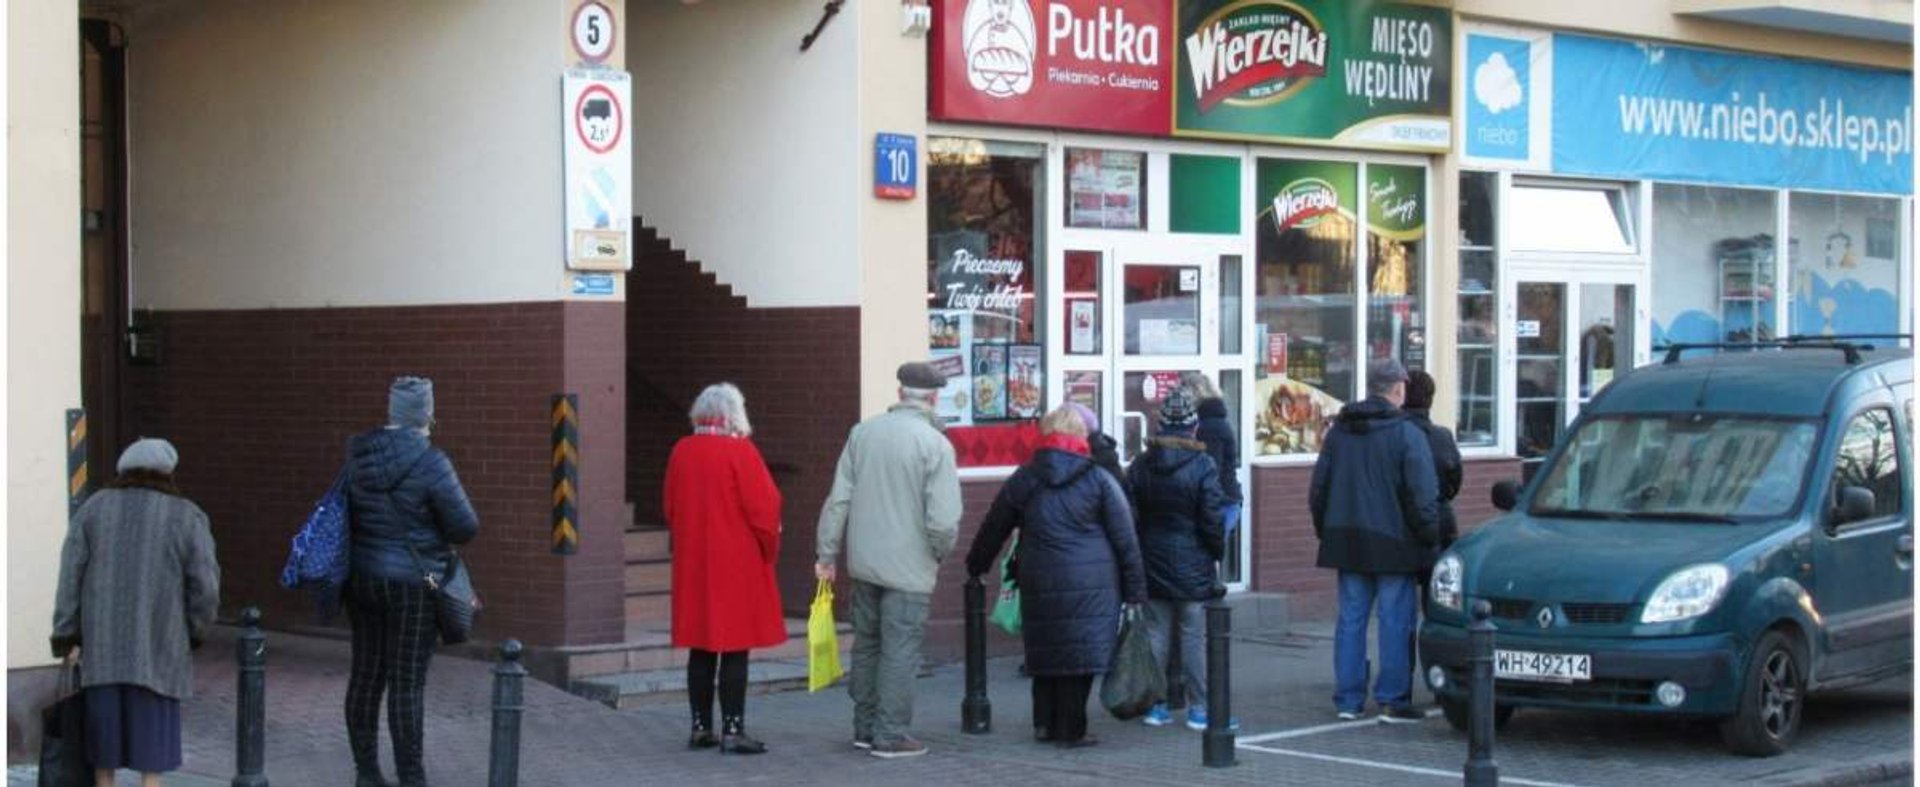 PHOTO: ZOFIA I MAREK BAZAK / EAST NEWS Warszawa N/Z Kolejka starszych ludzi do piekarni i sklepu miesnego w godzinach dla seniorow powyzej 60 roku zycia